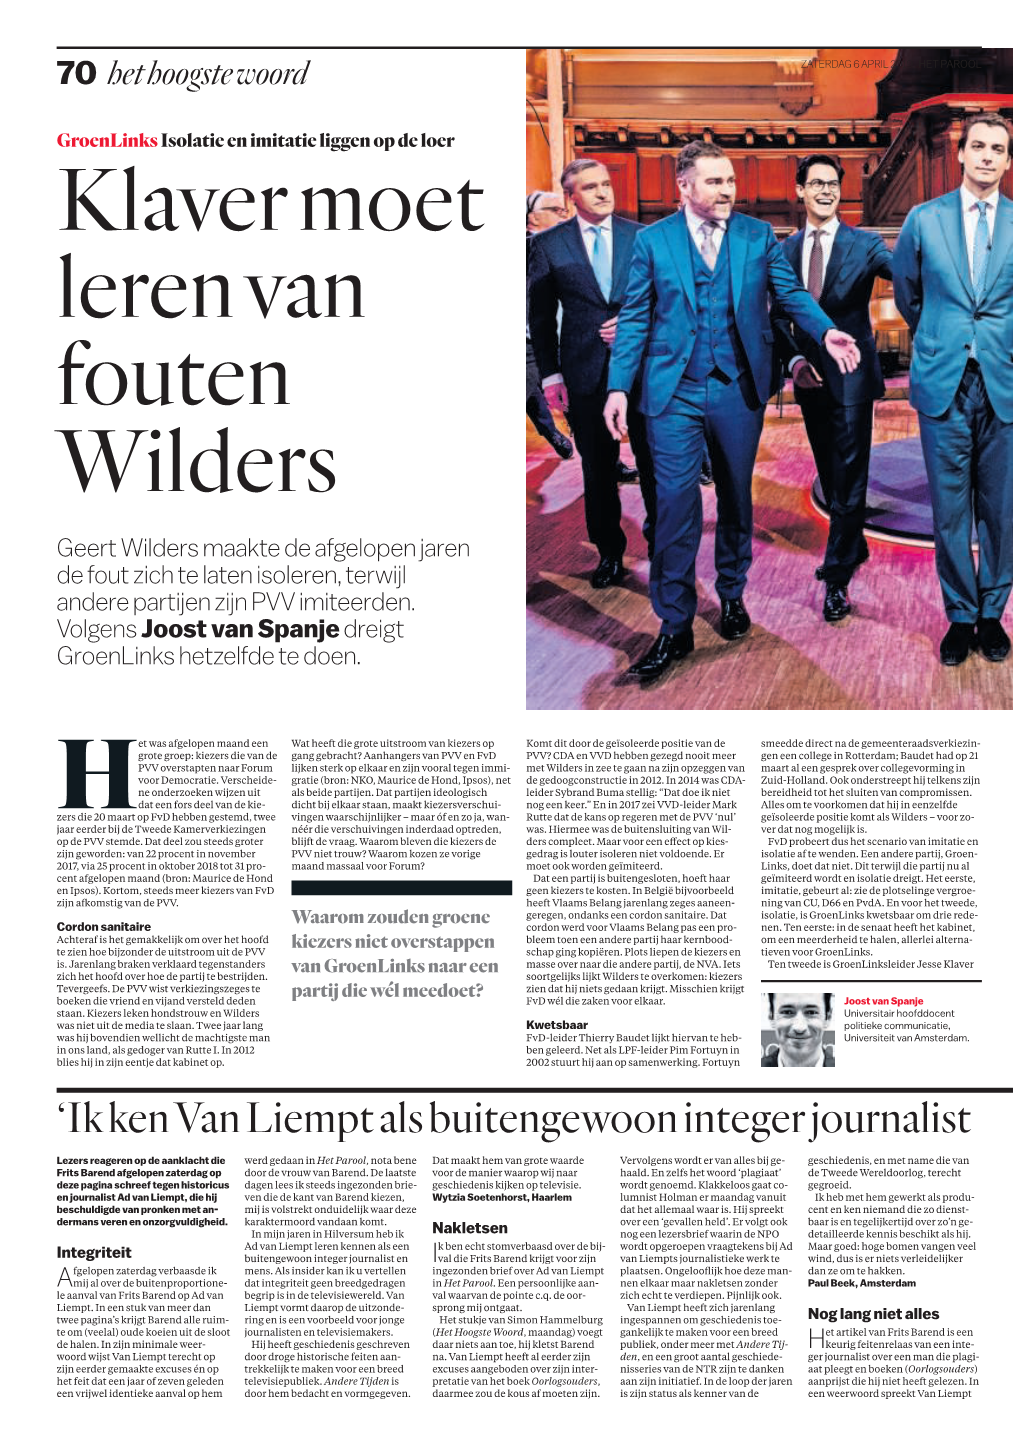 Klaver Moet Leren Van Fouten Wilders Geert Wilders Maakte De Afgelopen Jaren De Fout Zich Te Laten Isoleren, Terwijl Andere Partijen Zijn PVV Imiteerden